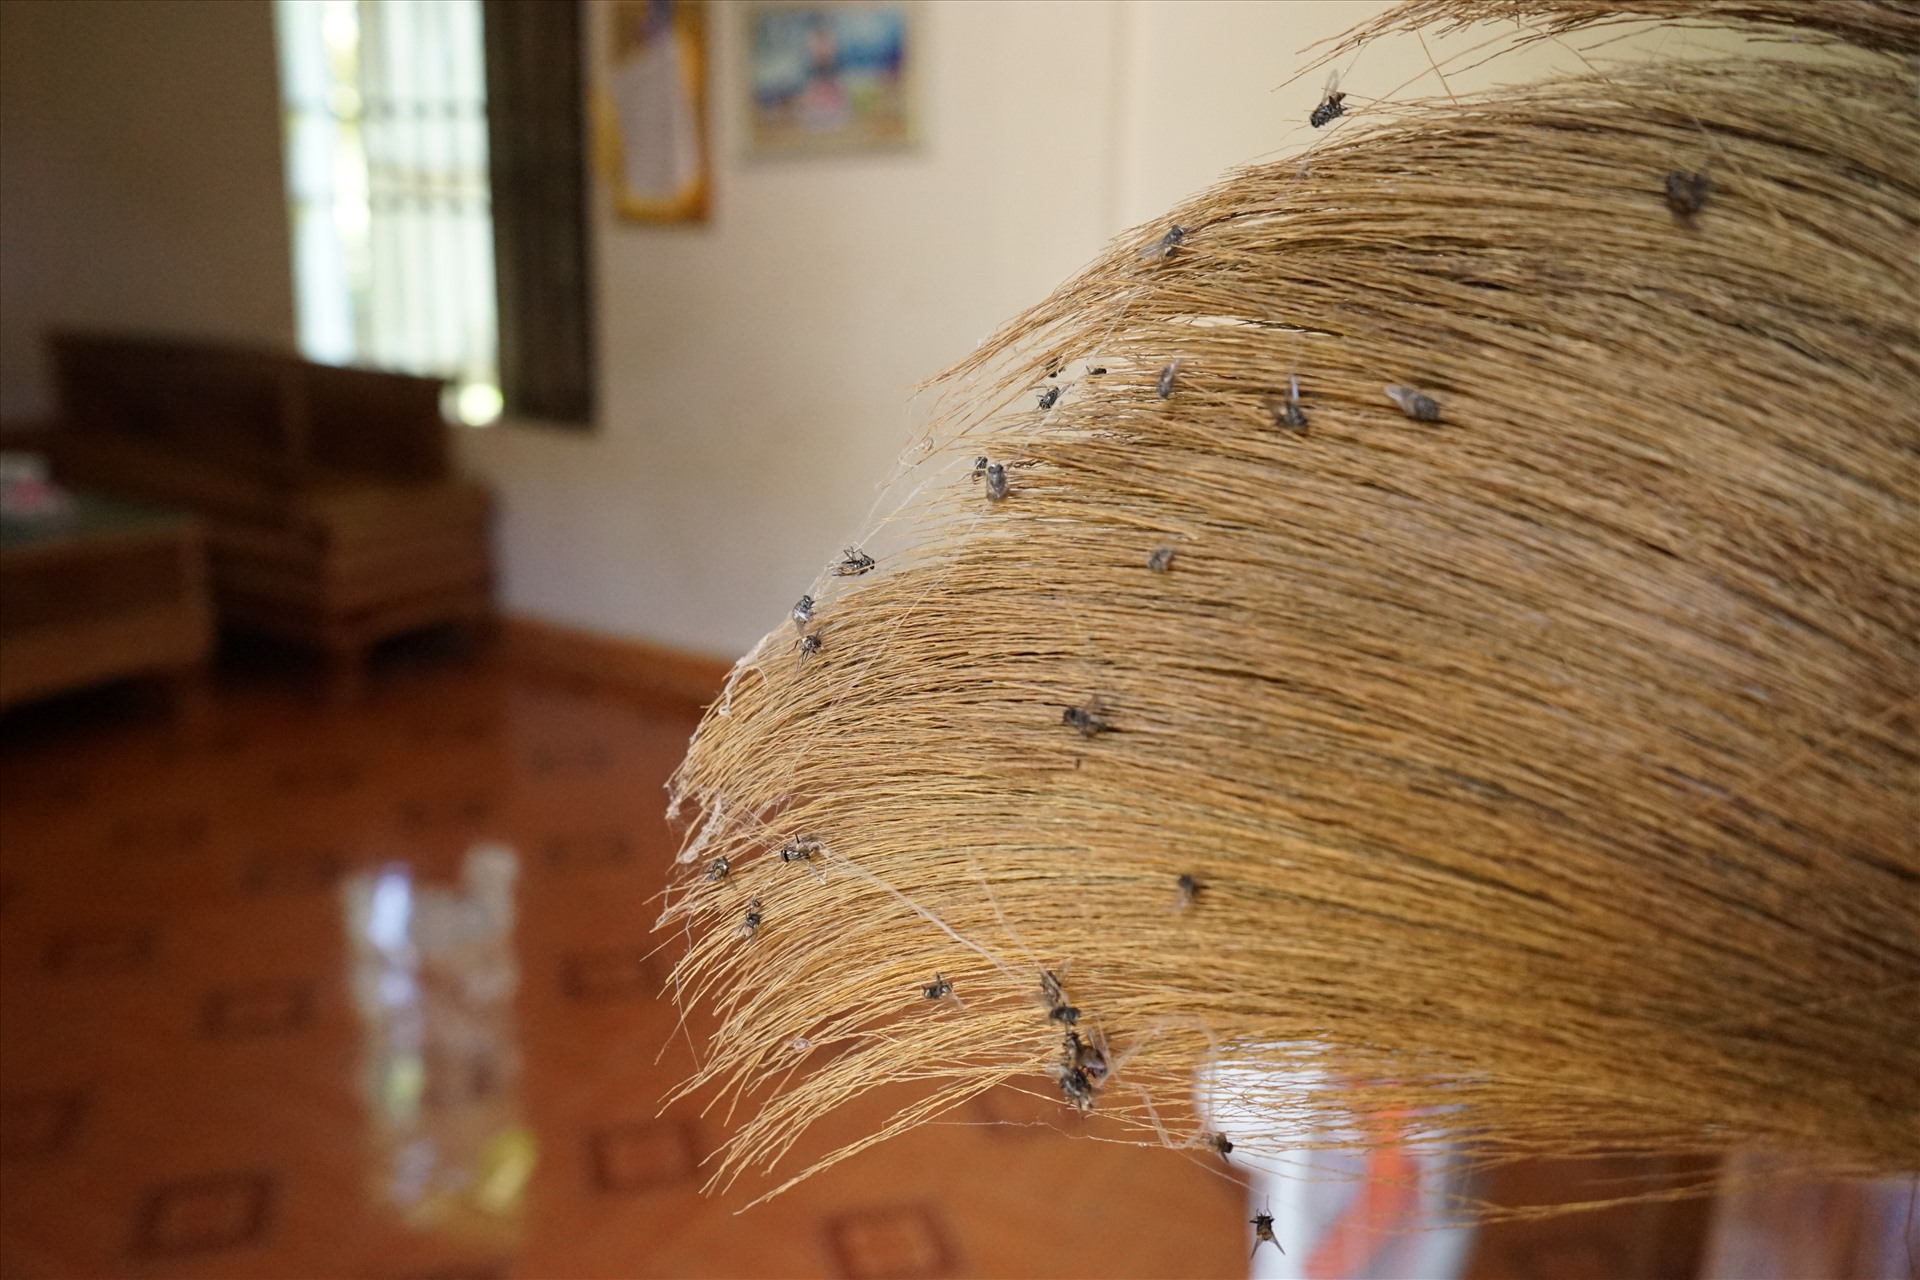 Do lượng ruồi chết liên tục, khiến các hộ dân phải thường xuyên quét dọn. Ảnh: Quách Du